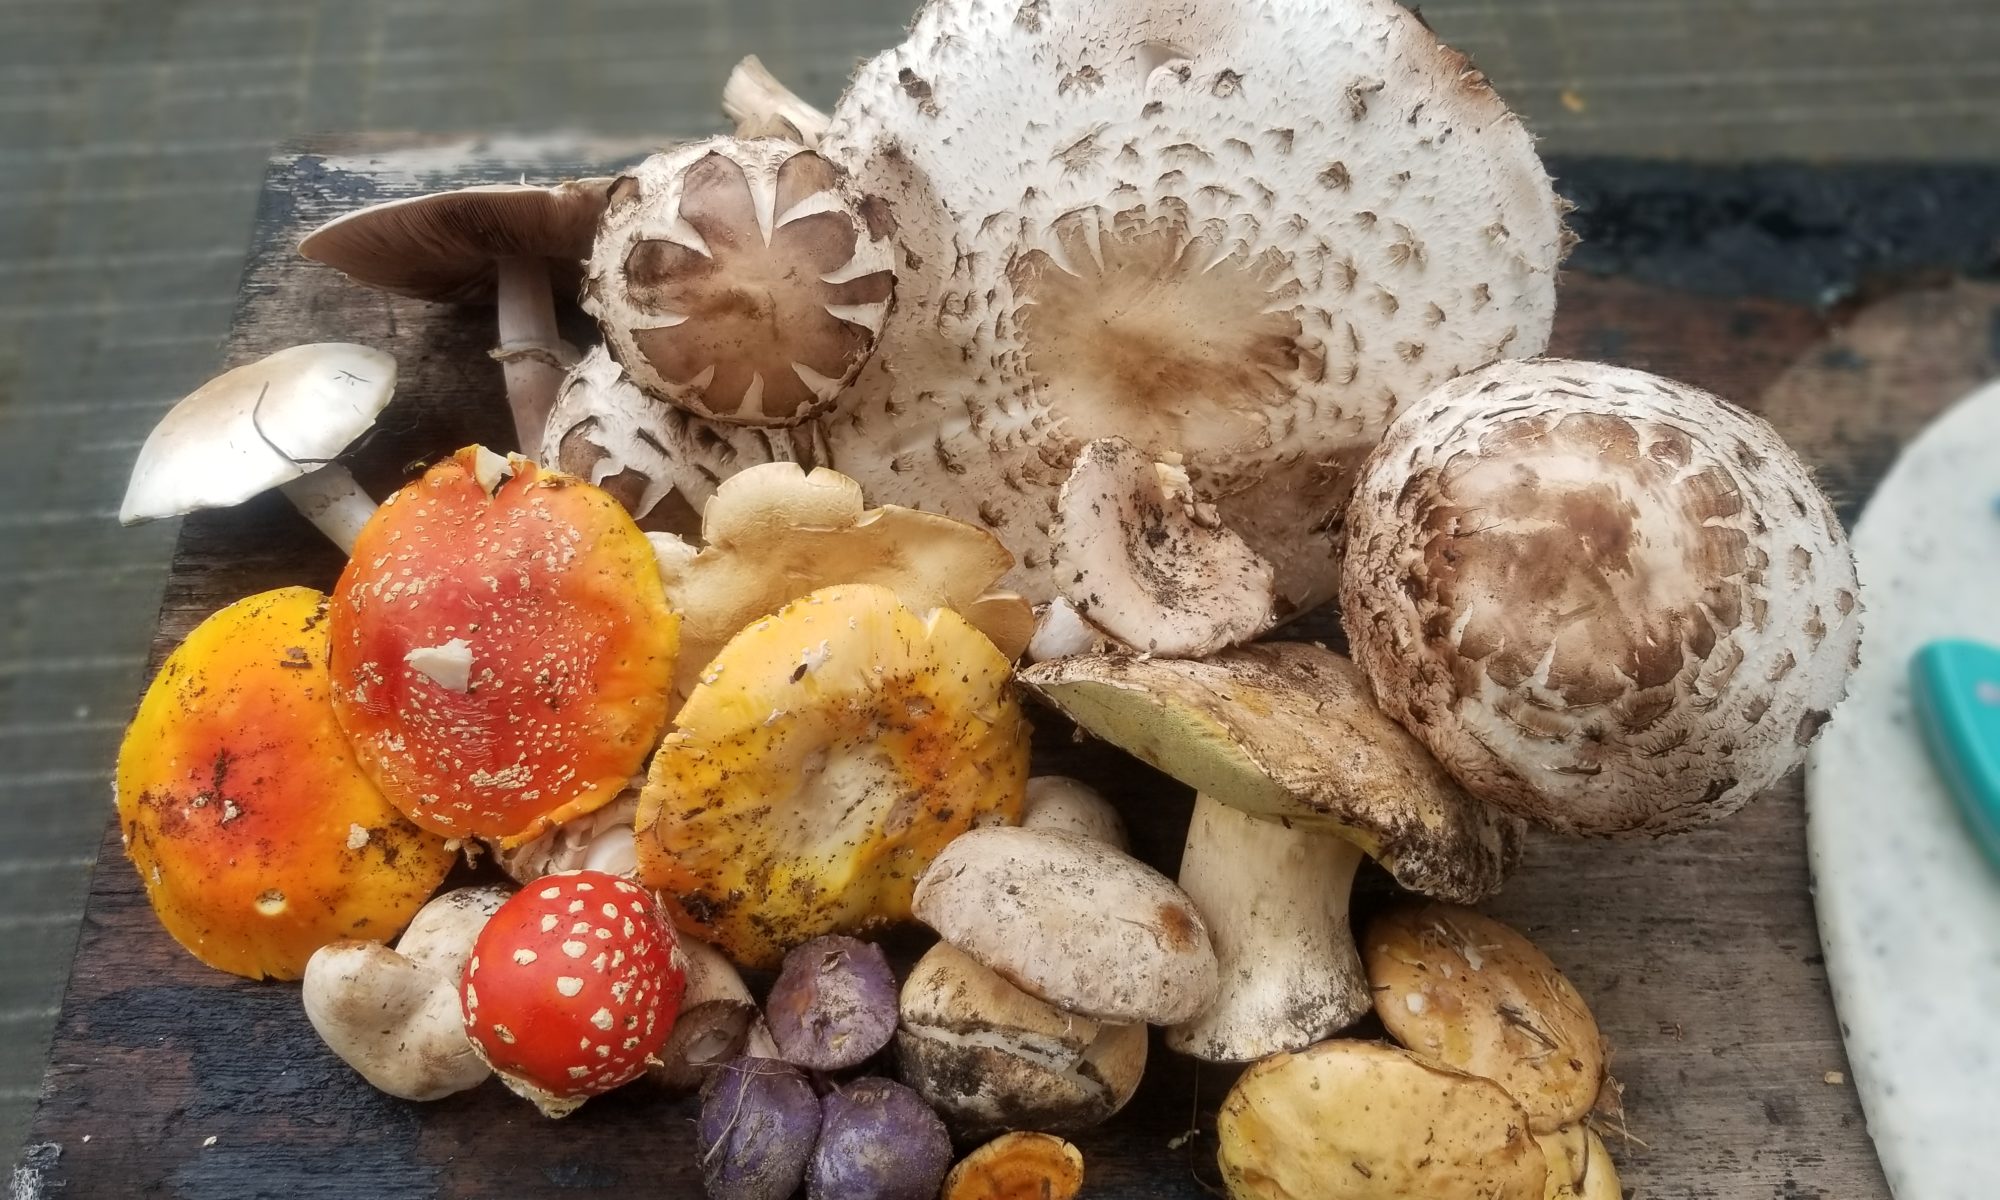 mushroom variety in Colorado